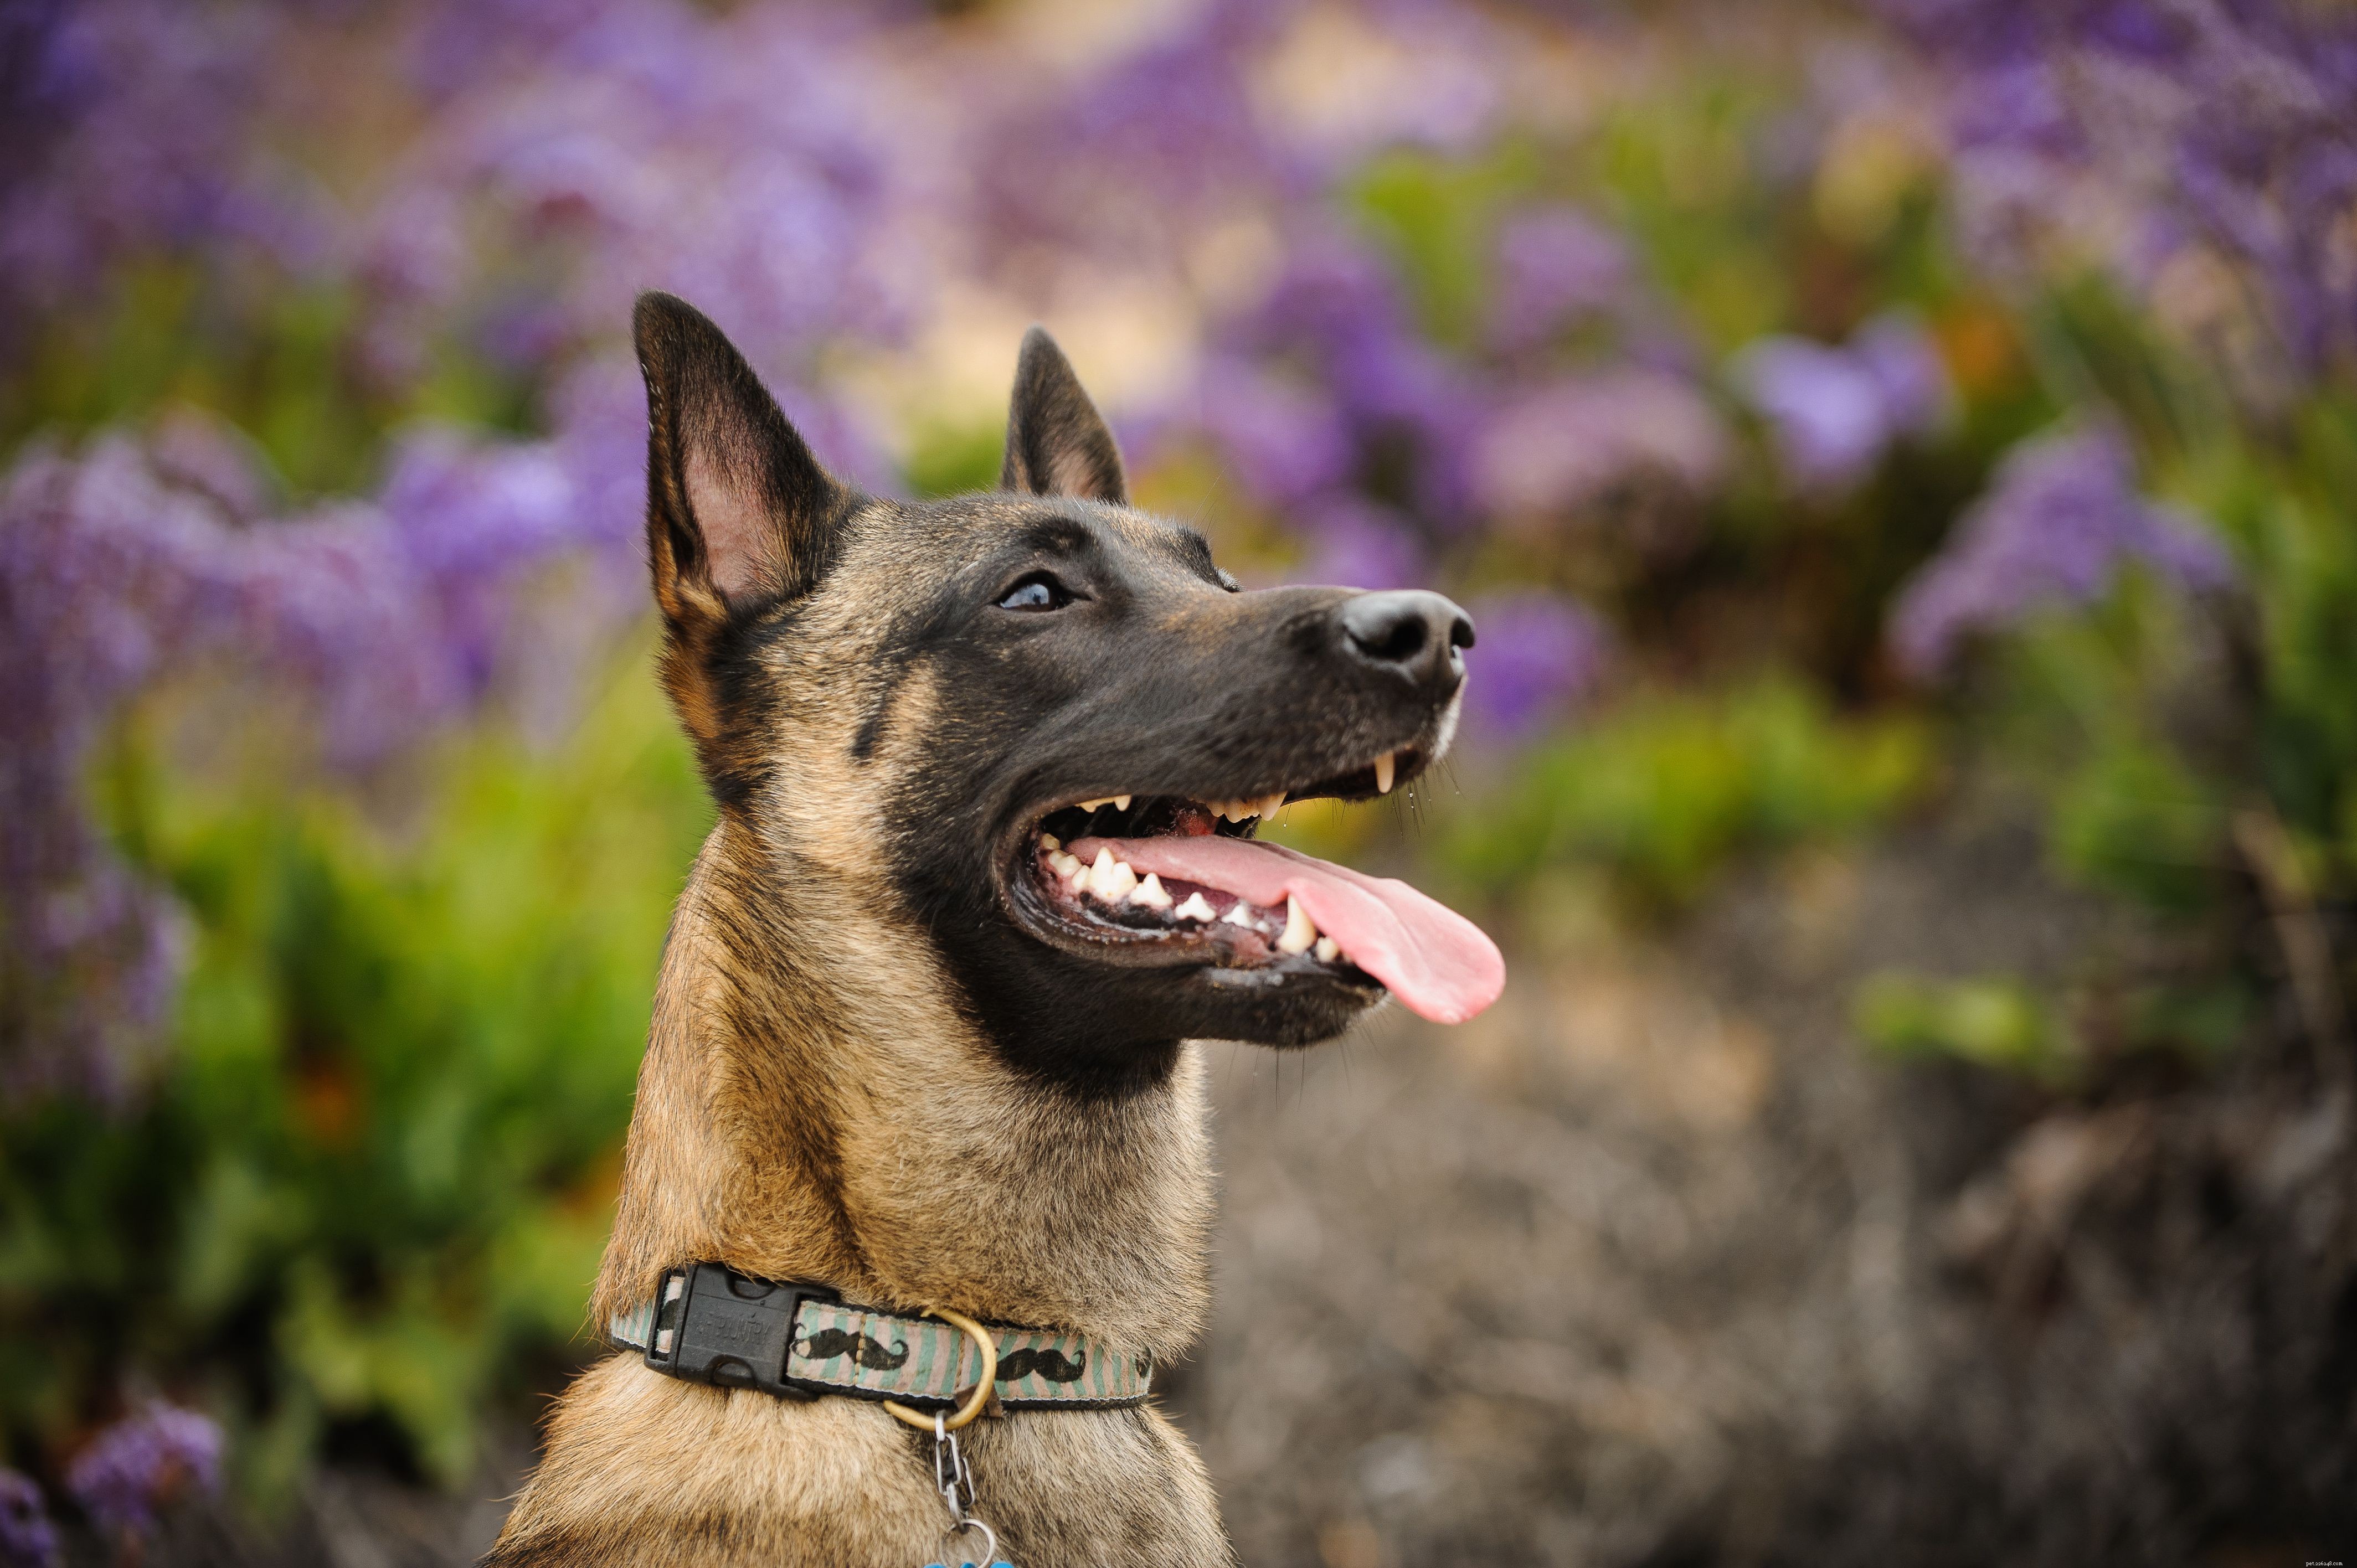 10 meilleures races de chiens pour la protection